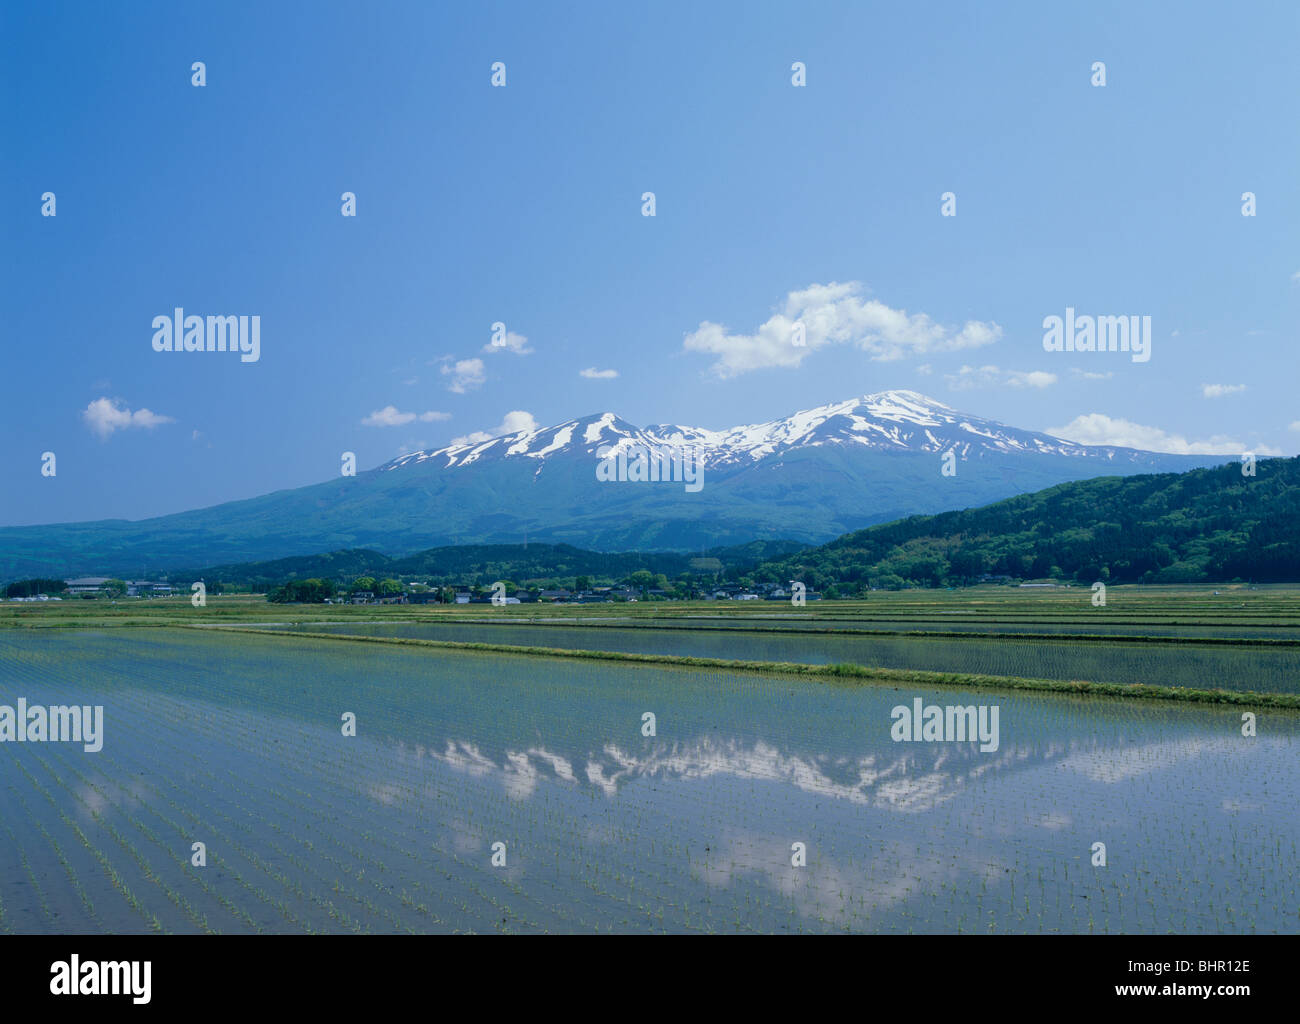 Mount Chokai And Paddy Field Yuza Yamagata Japan Stock Photo Alamy